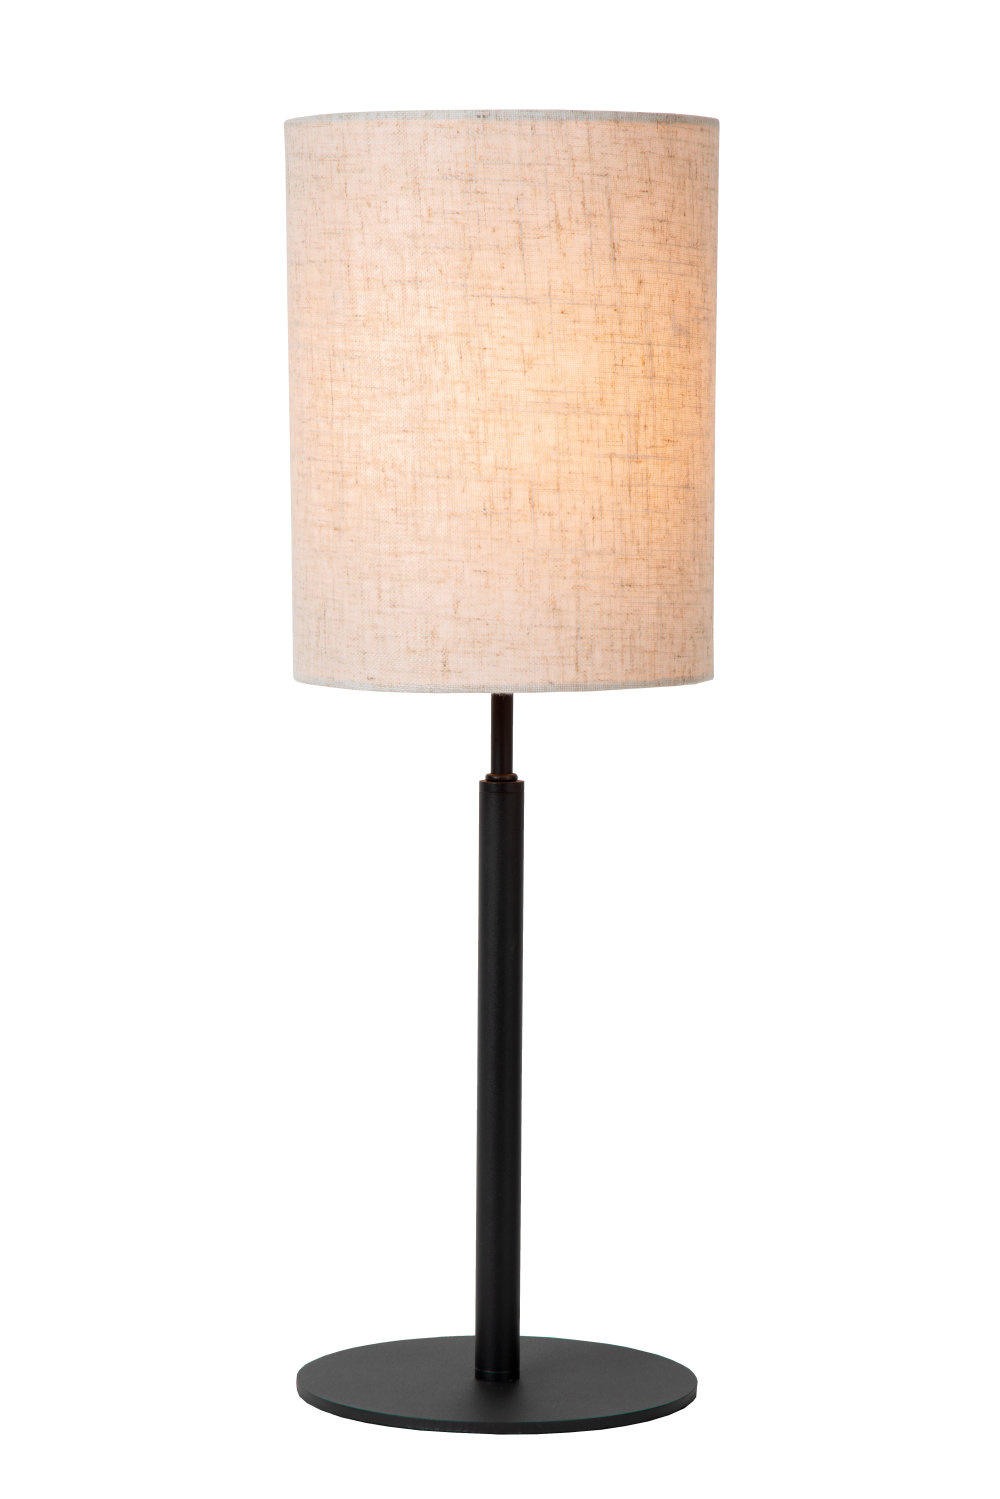 MAYA - Tafellamp - Ø 28 cm - 1xE27 - Beige